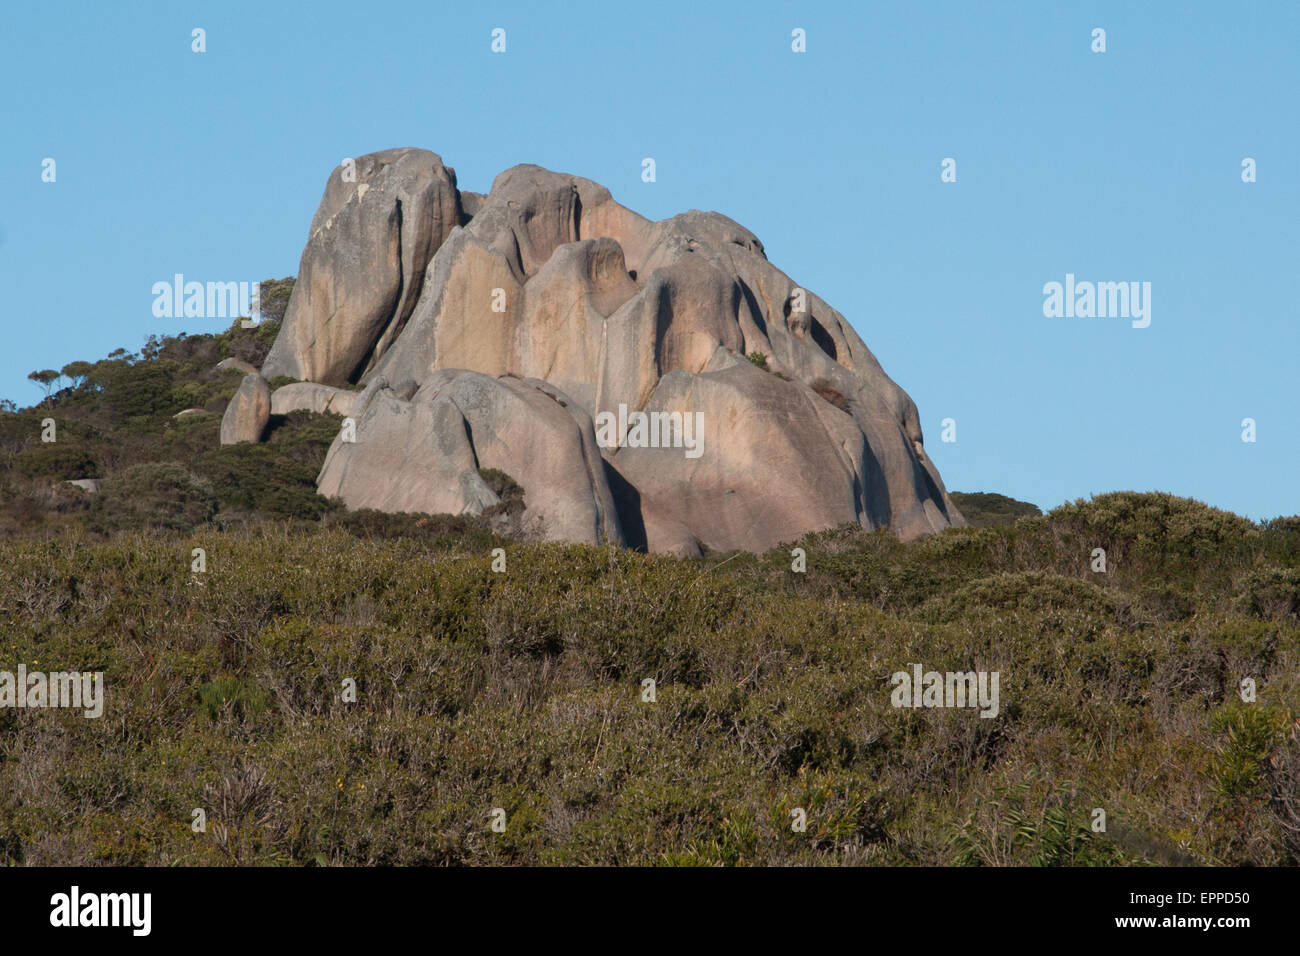 Des formations de roche de granit à Waychinicup National Park, Australie occidentale Banque D'Images